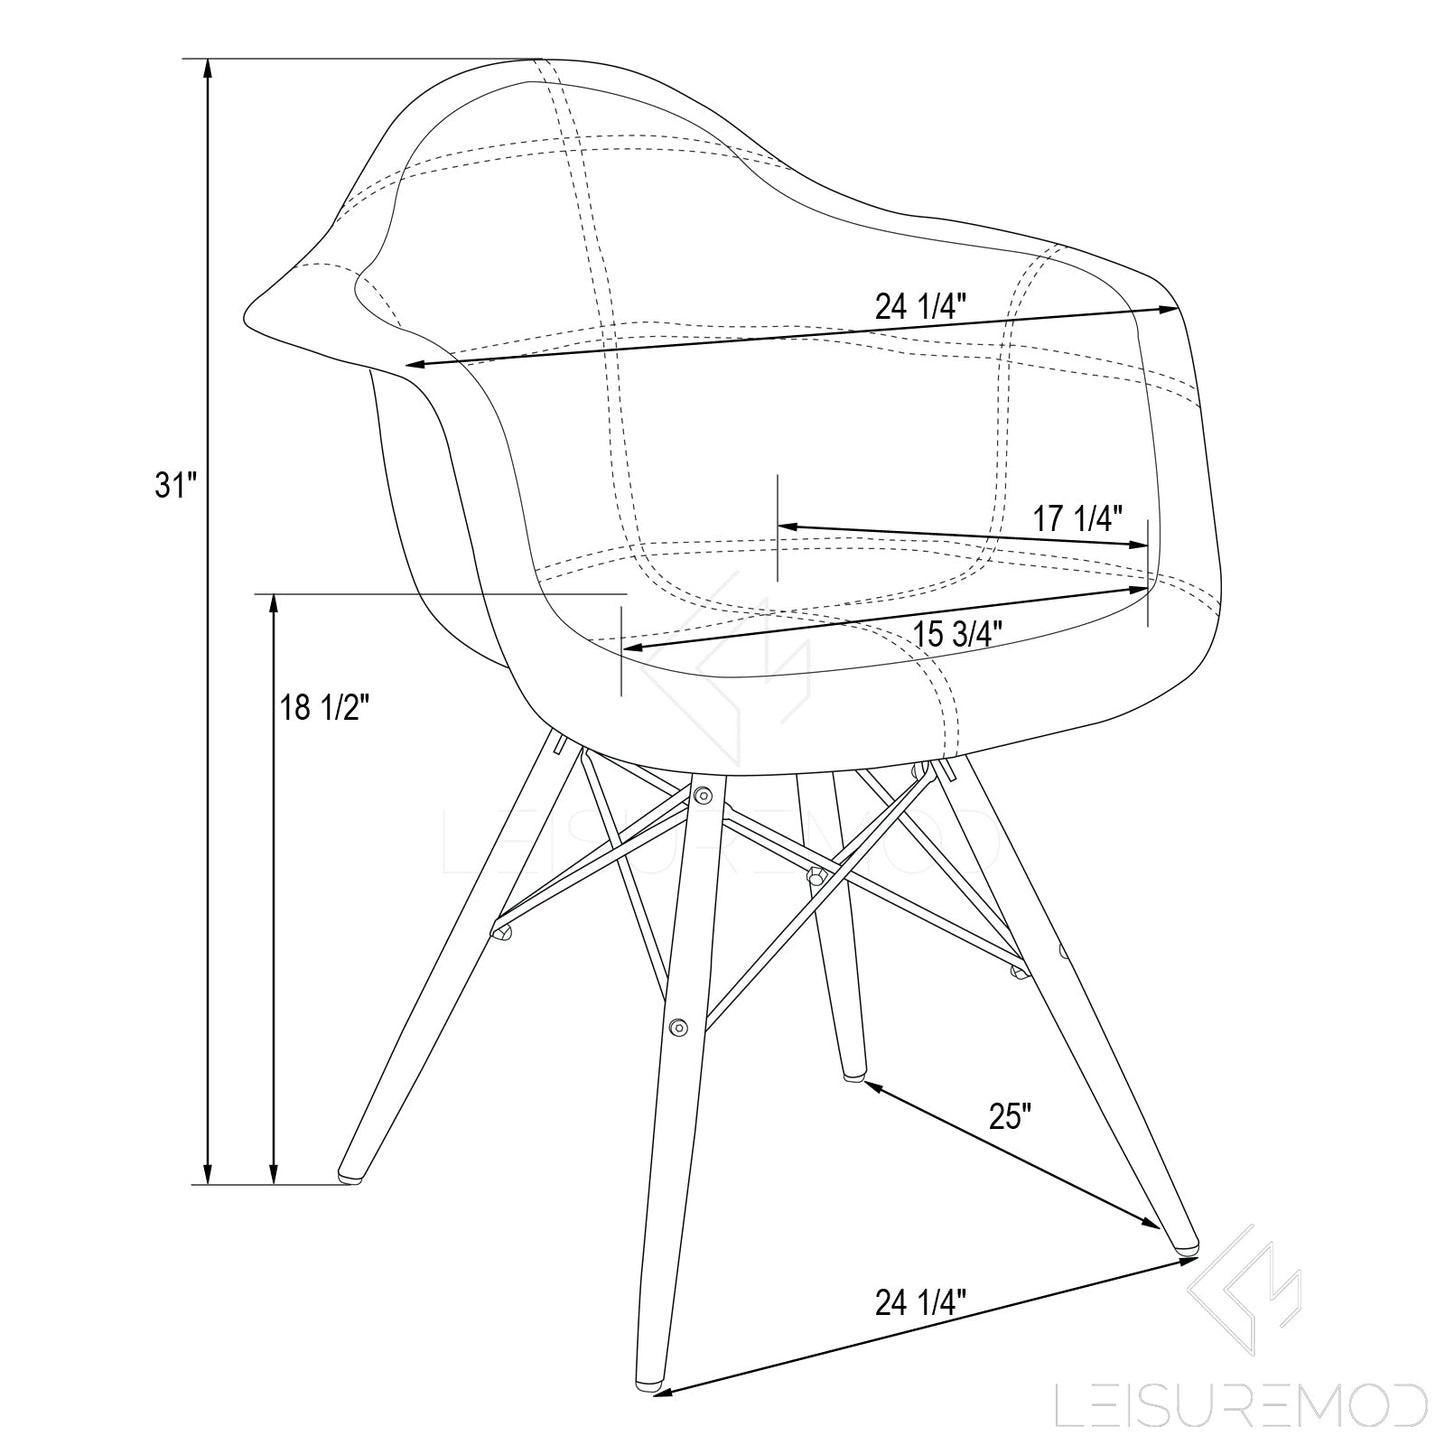 Lewie Velvet Eiffel Accent Chair - Set of 2